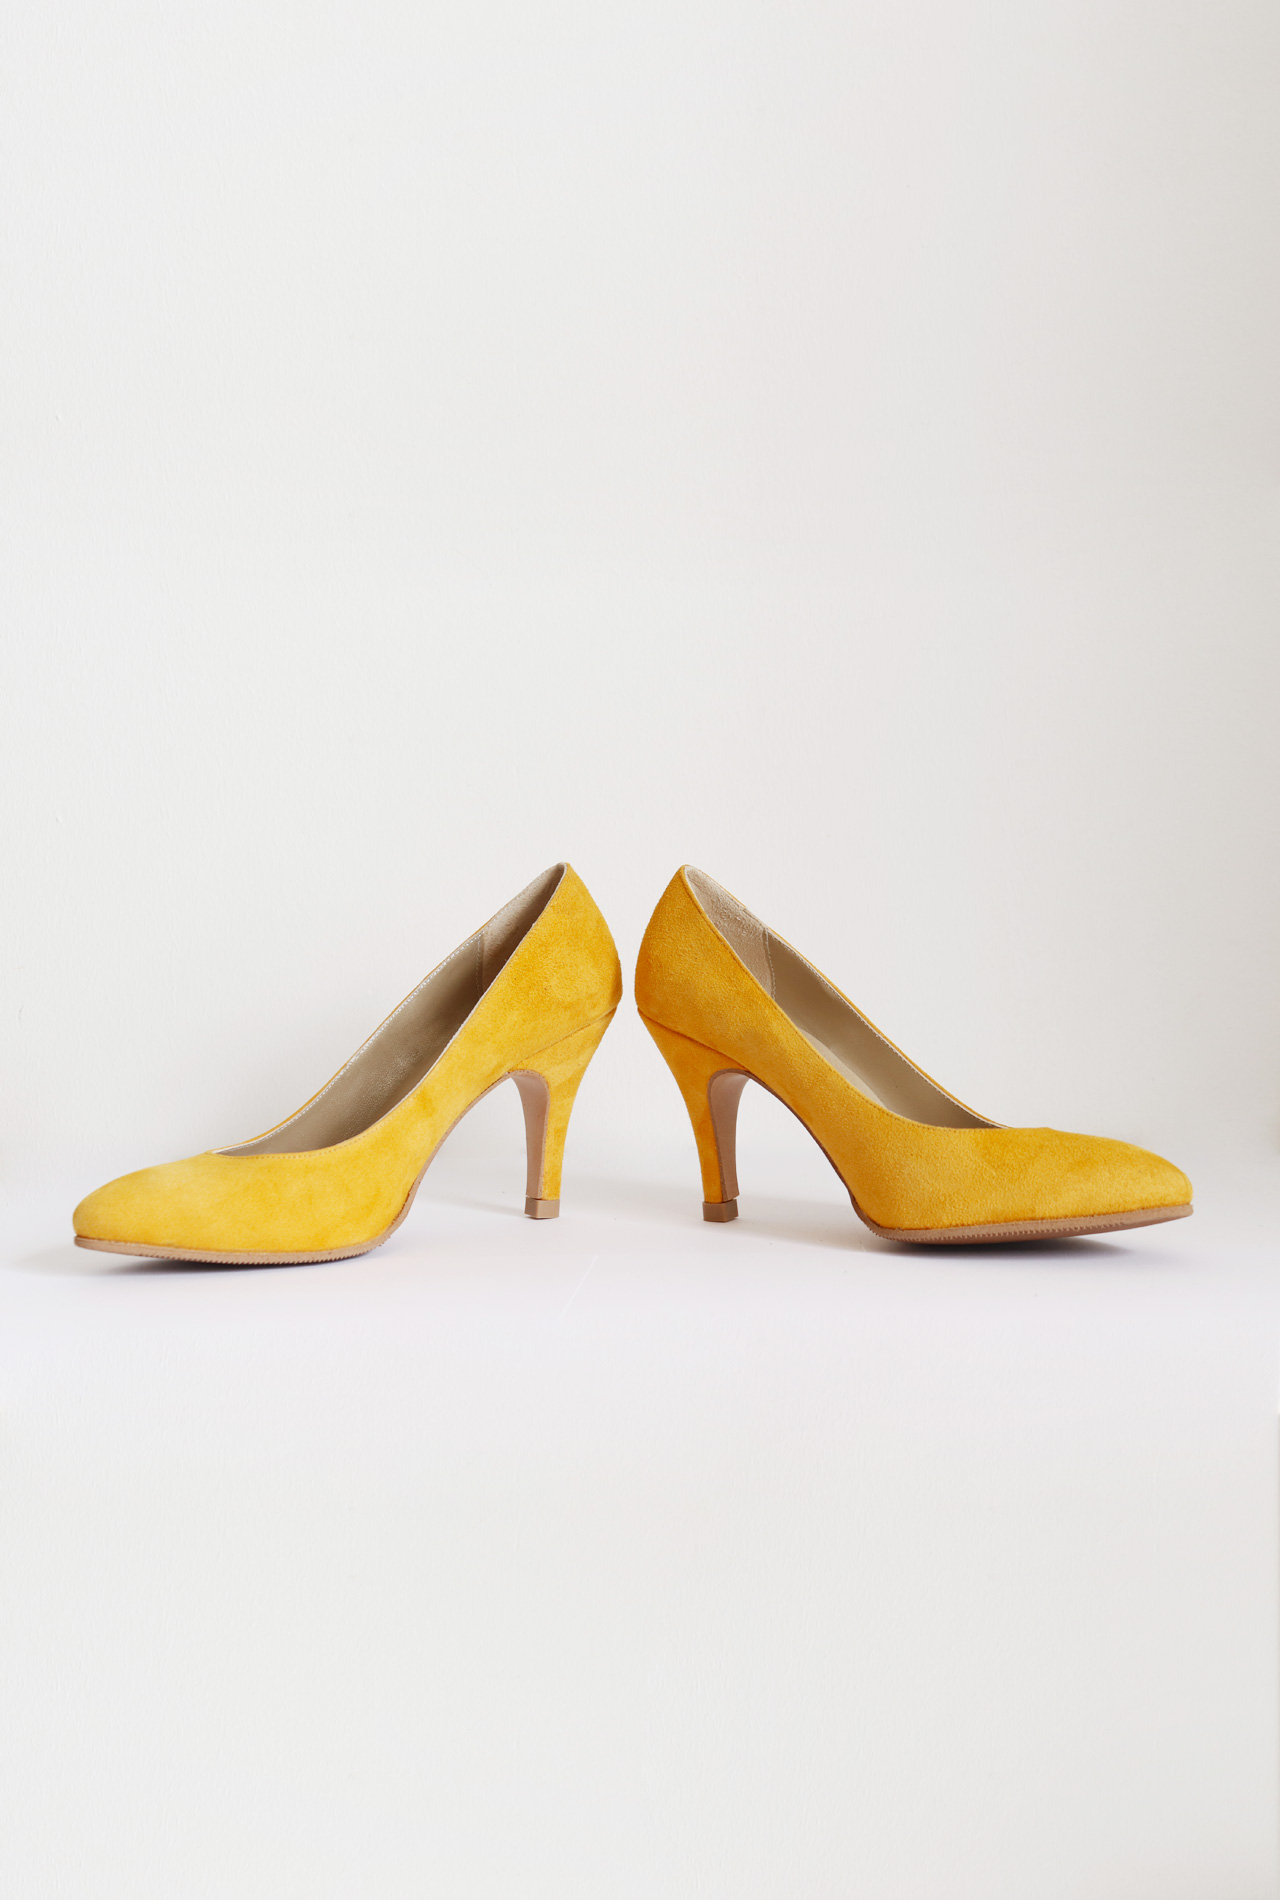 mustard yellow velvet shoes